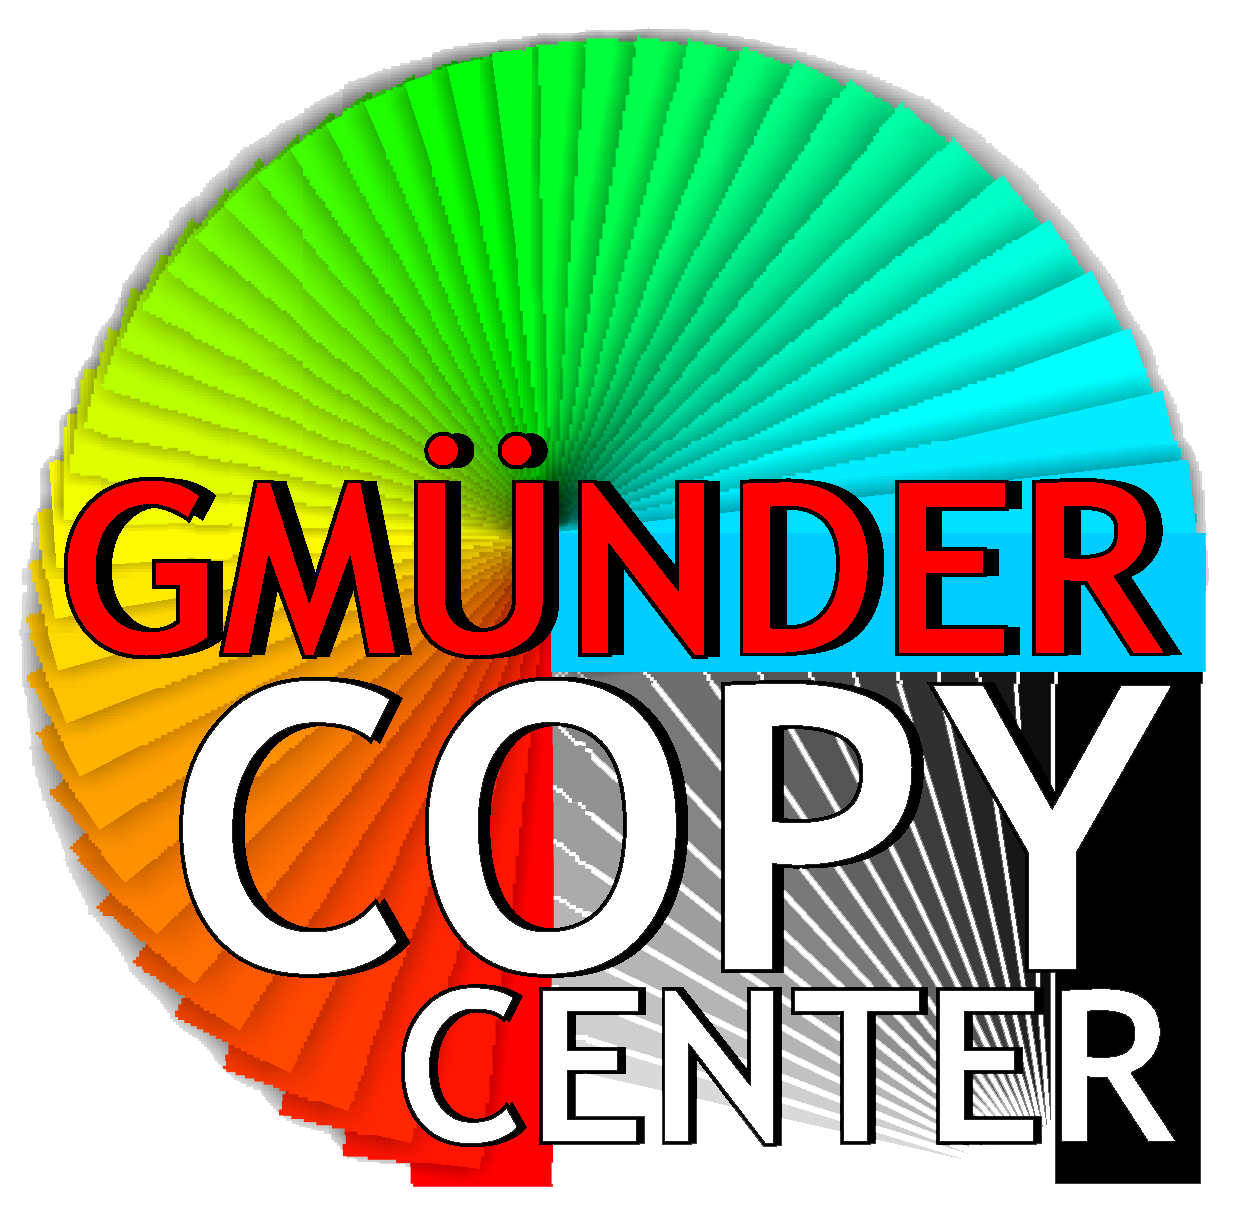 Gmuender Copy Center